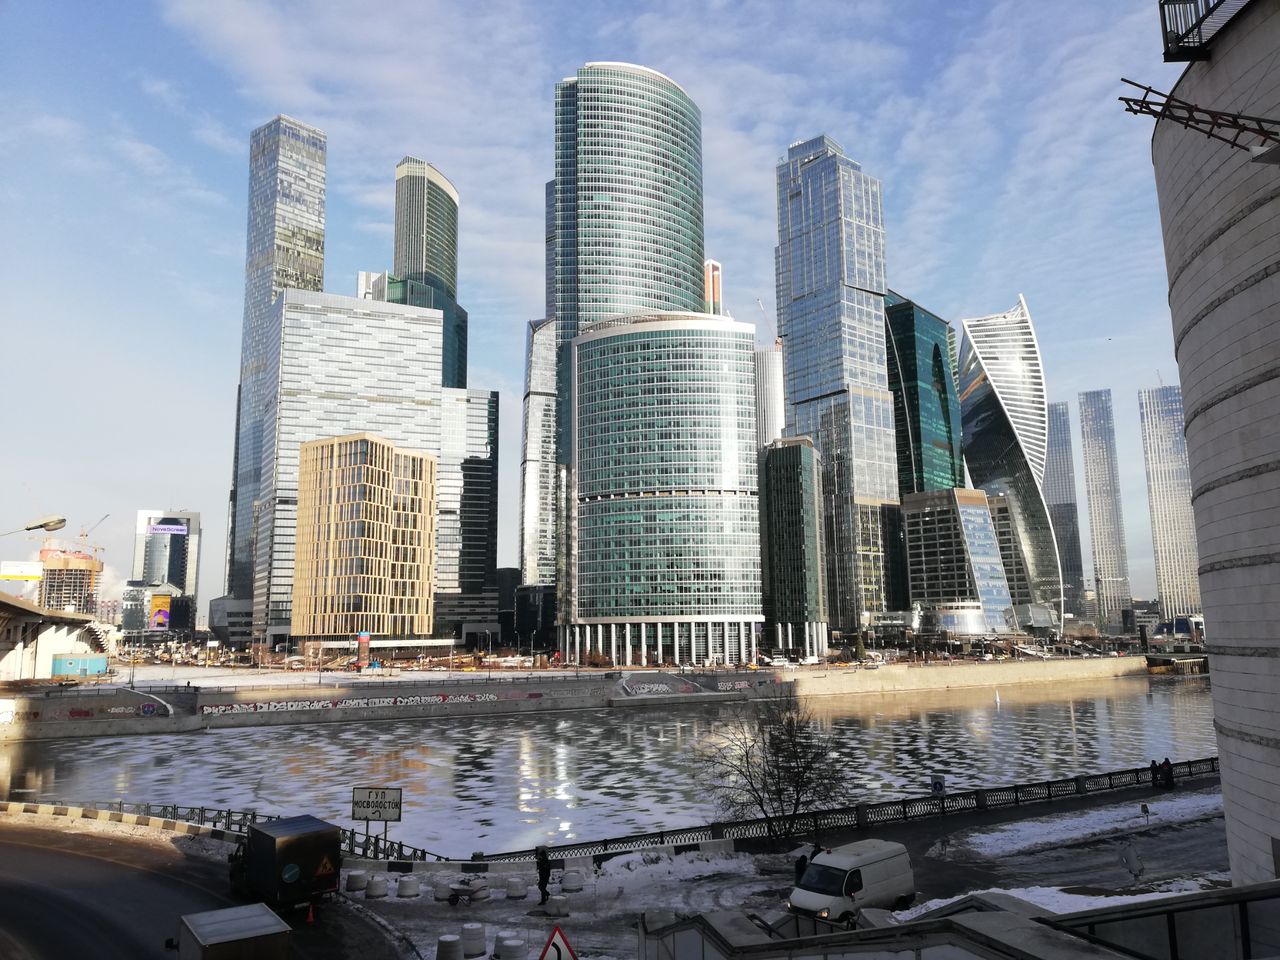 Москва-Сити — смотровая с мороженым и шоколадом | Цена 4600₽, отзывы, описание экскурсии